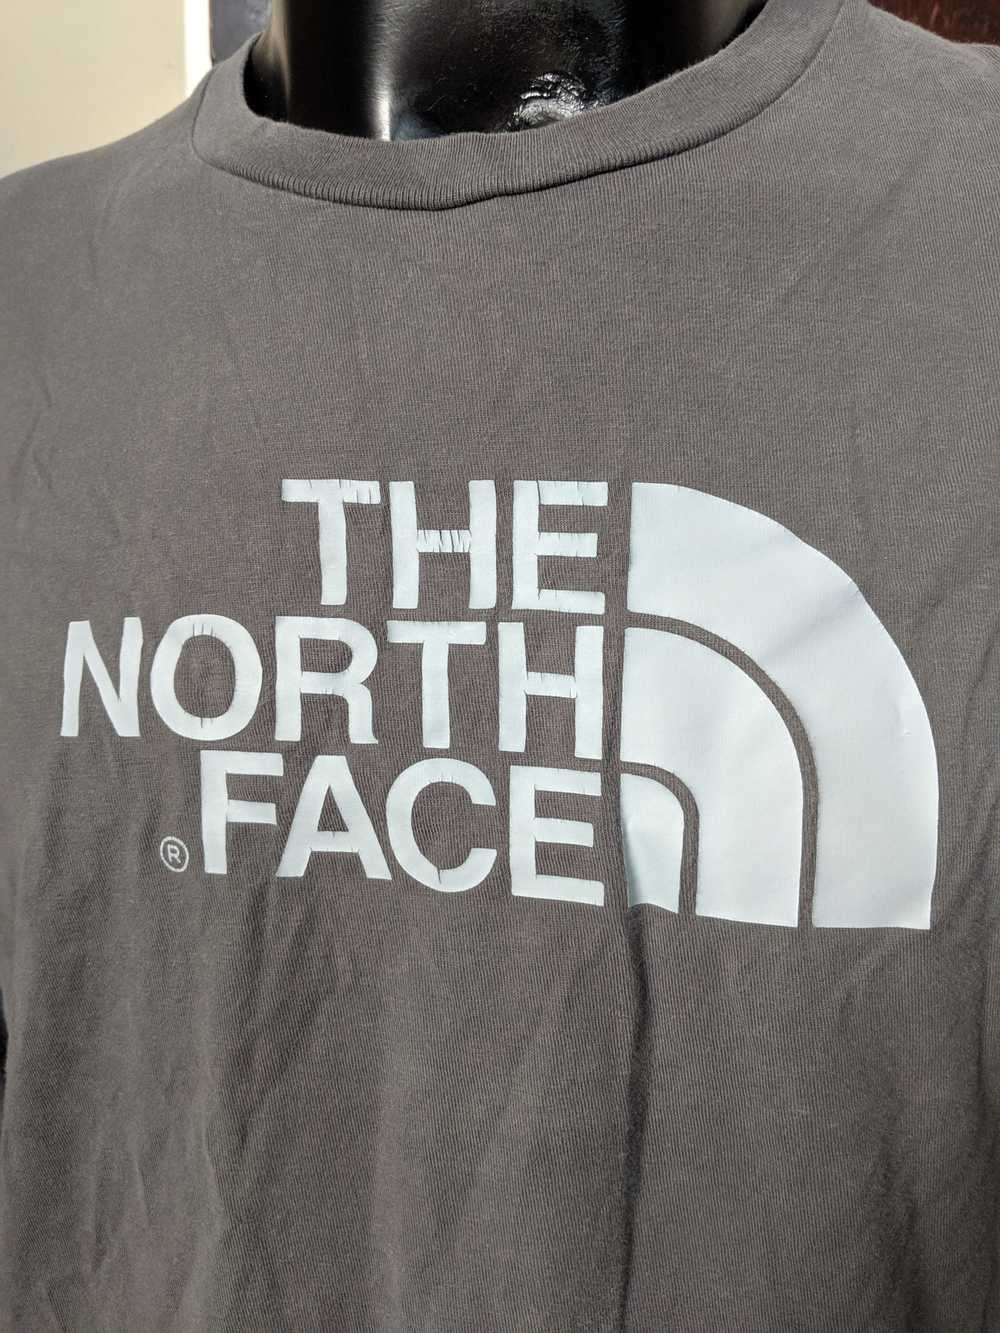 The North Face Big logo print long sleeve shirt - image 3